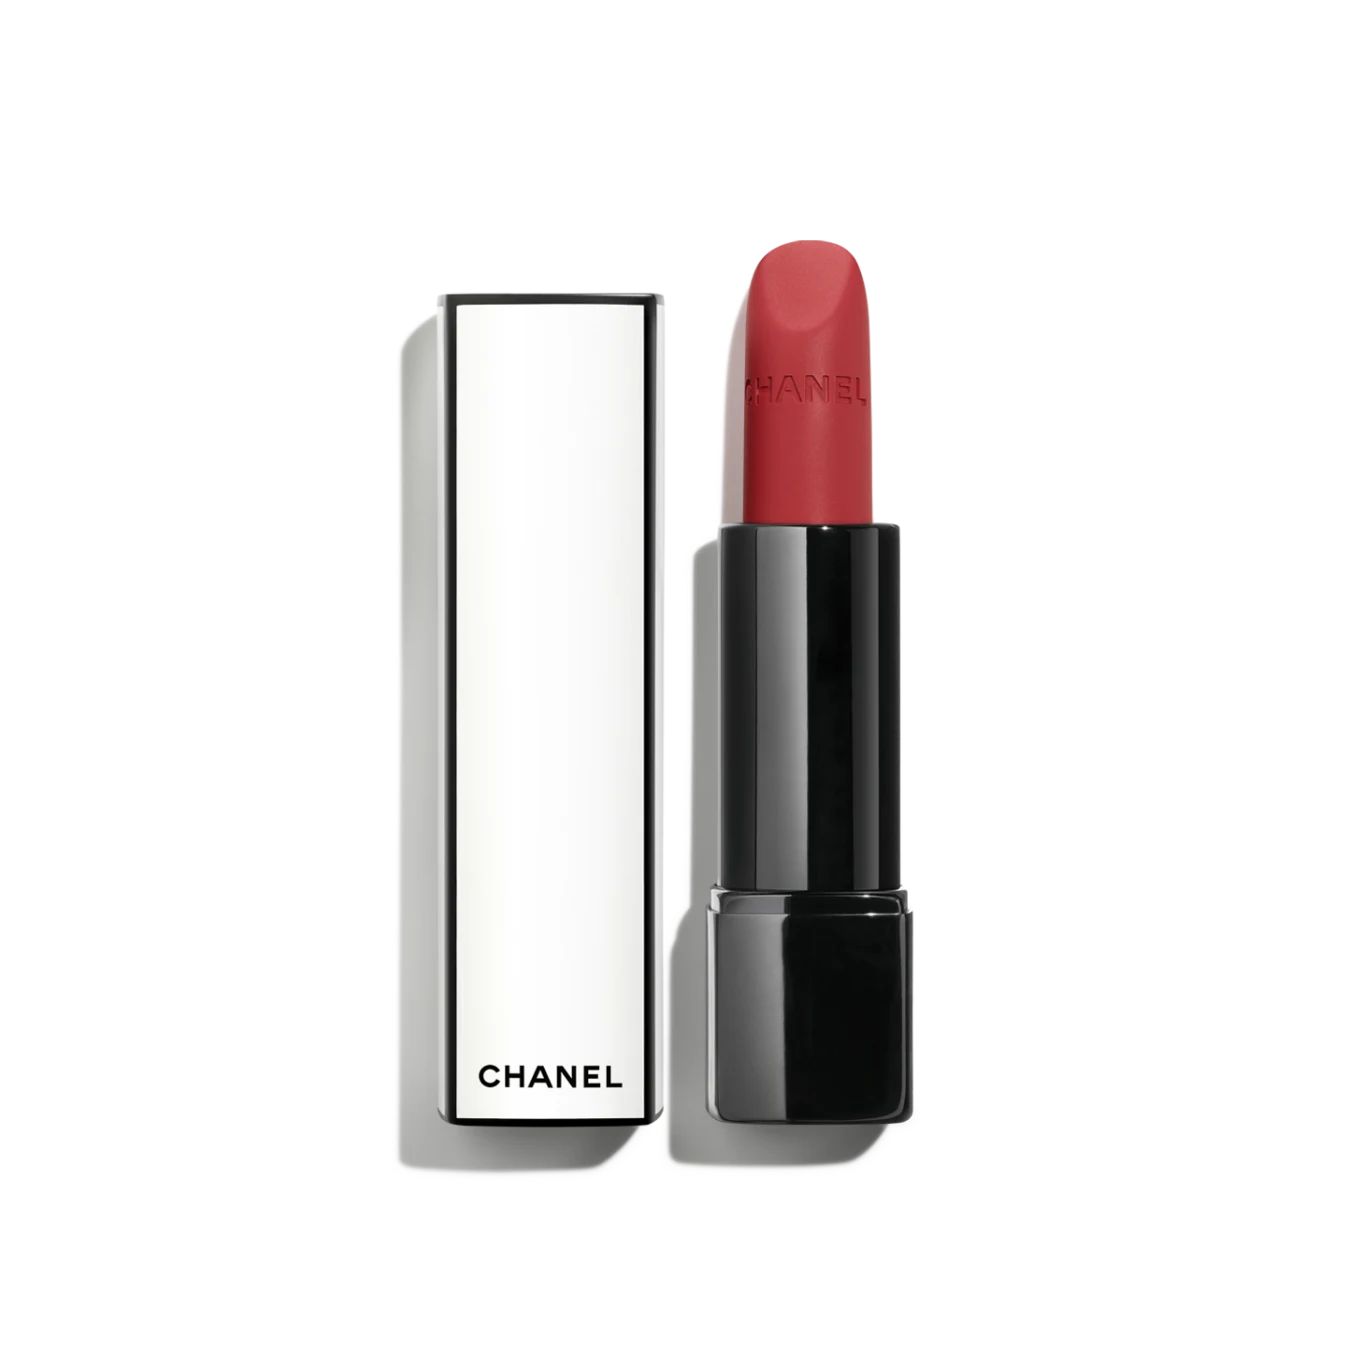 ROUGE ALLURE VELVET NUIT BLANCHE Luminous matte lip colour 00:00 | CHANEL | Chanel, Inc. (US)